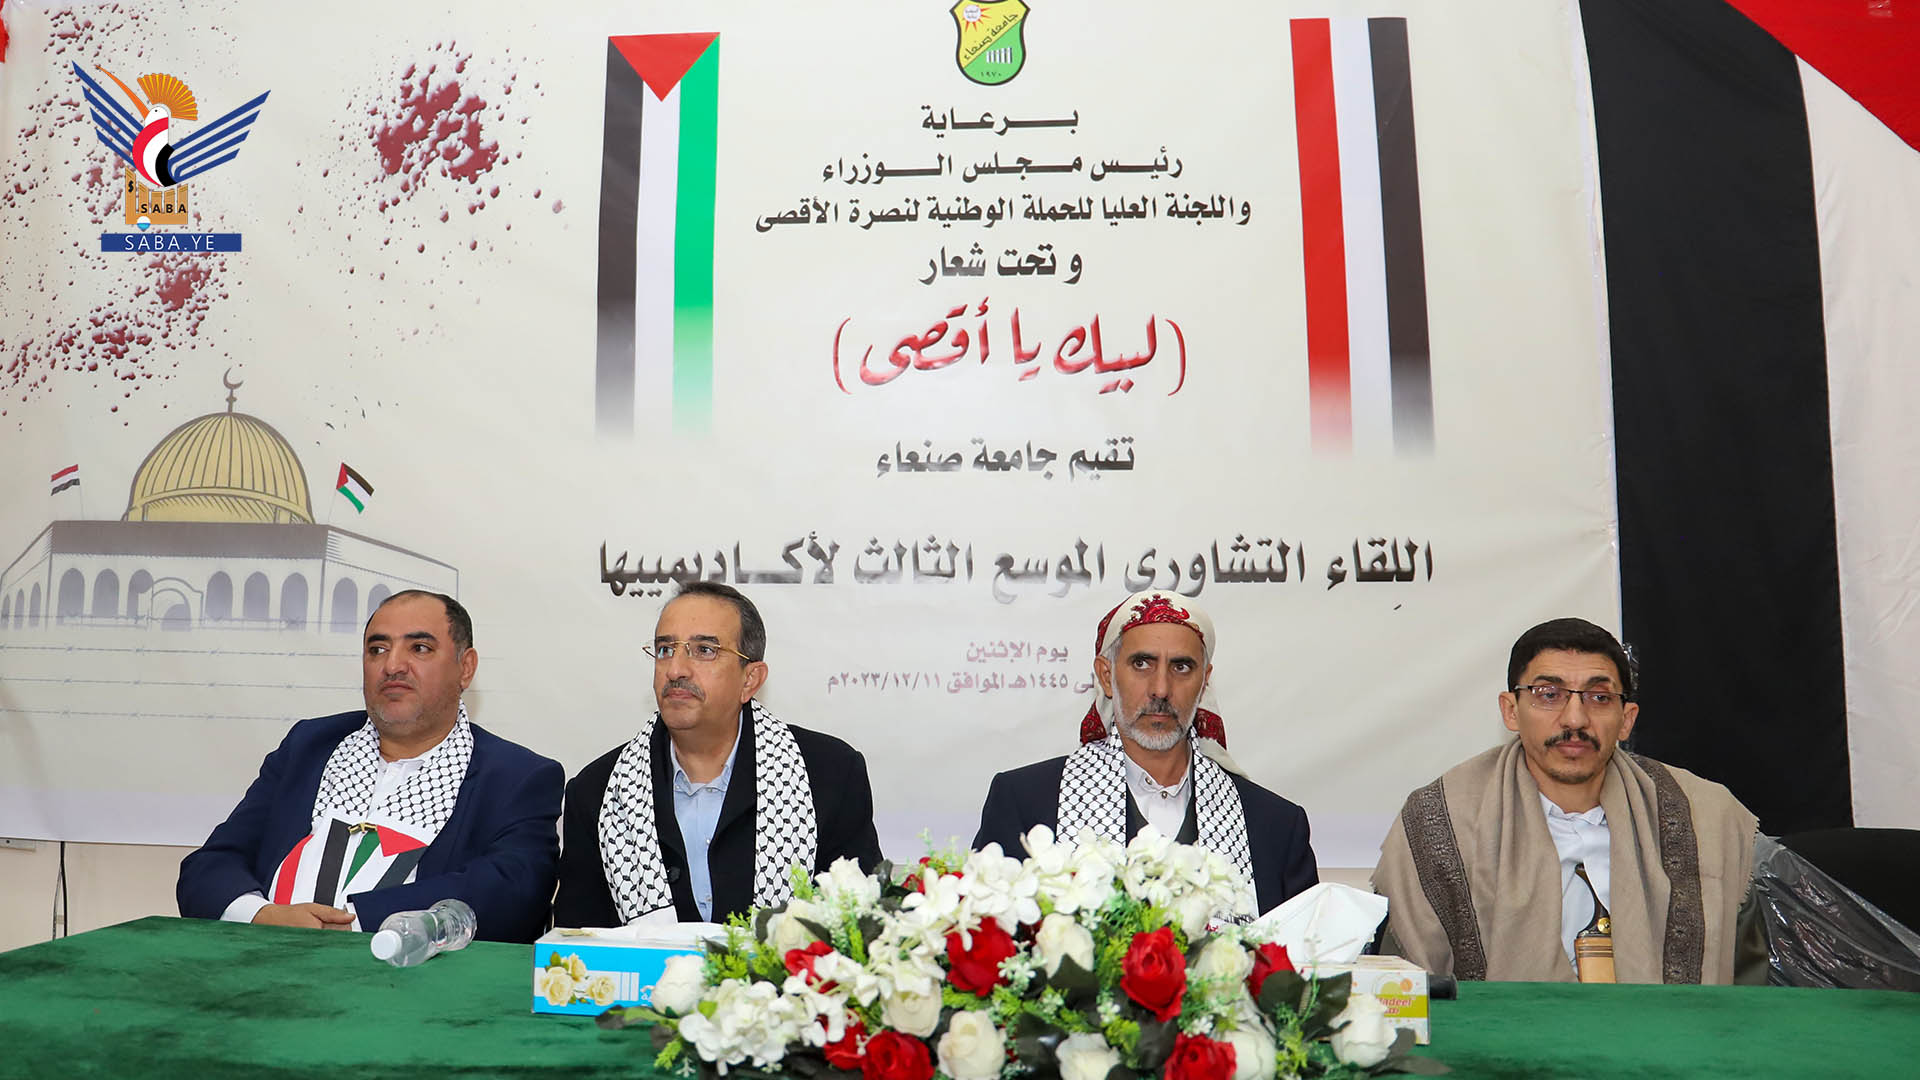  لقاء تشاوري بجامعة صنعاء حول دور الأكاديميين في دعم القضية الفلسطينية